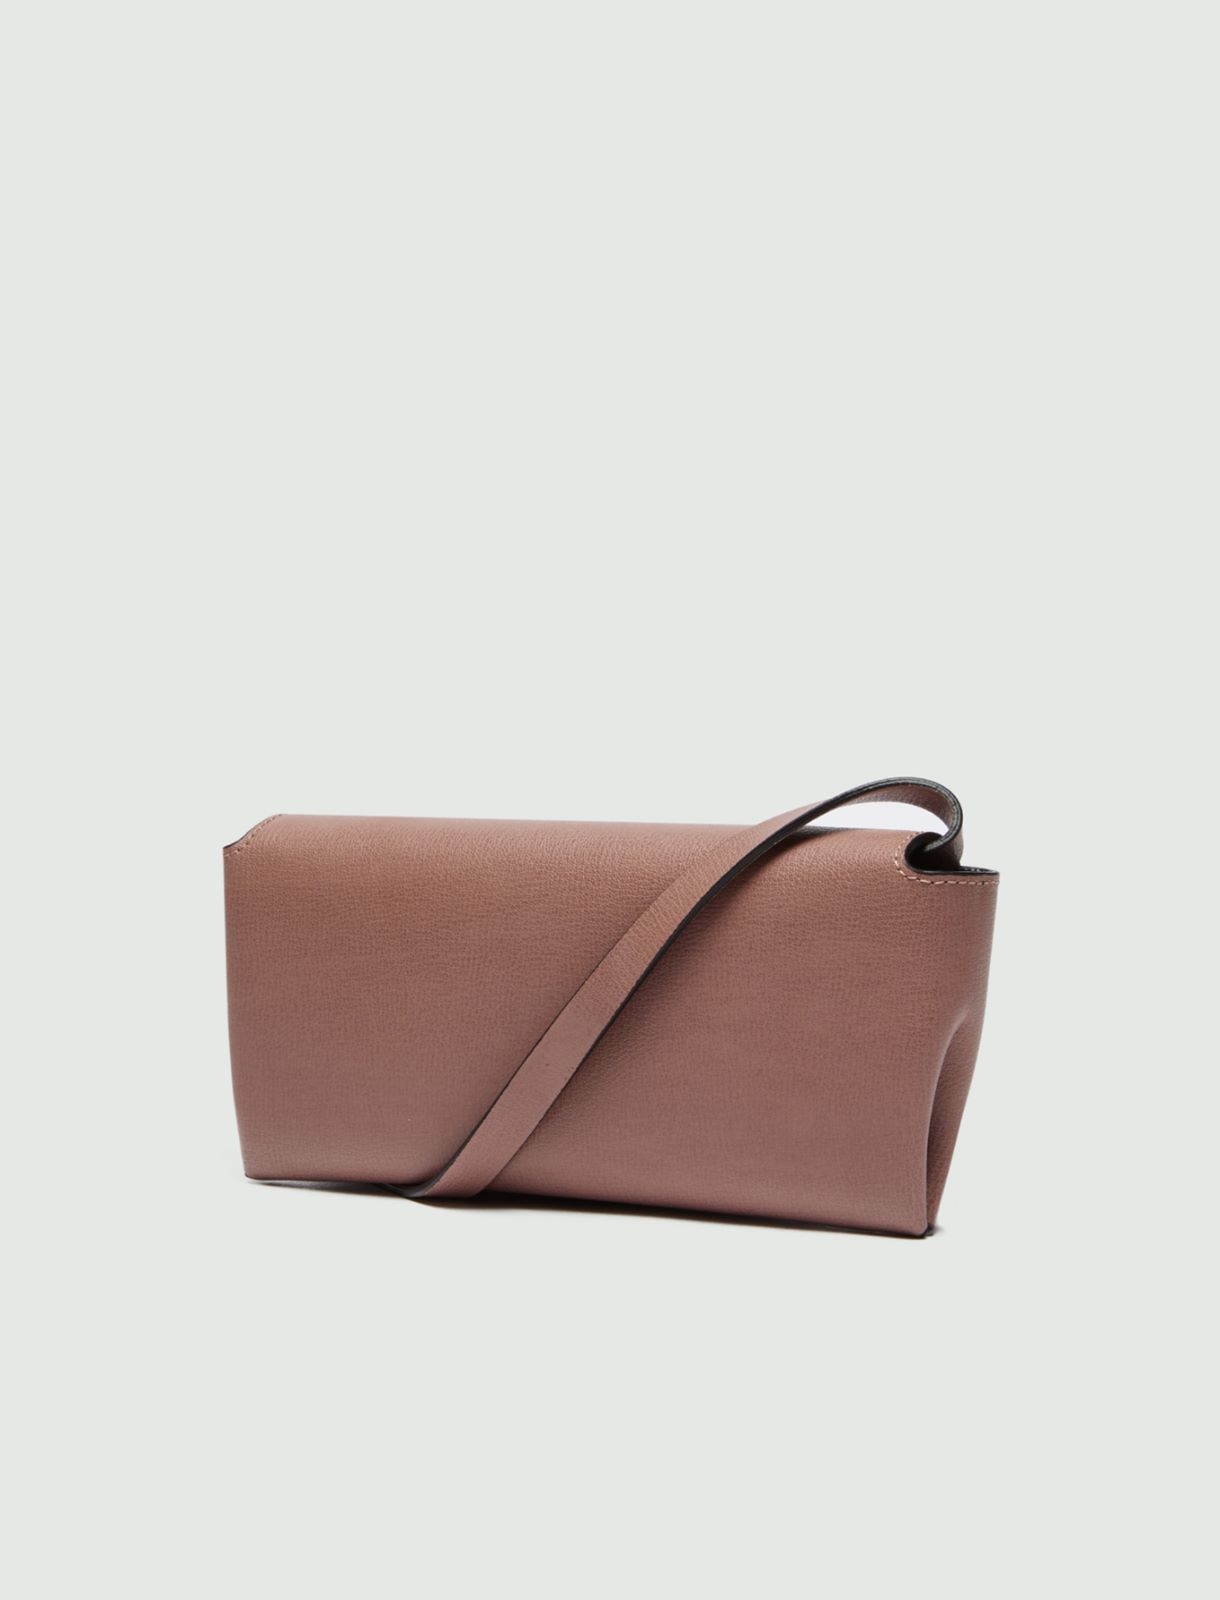 Leather wallet/bag  - Antique rose - Marella - 2